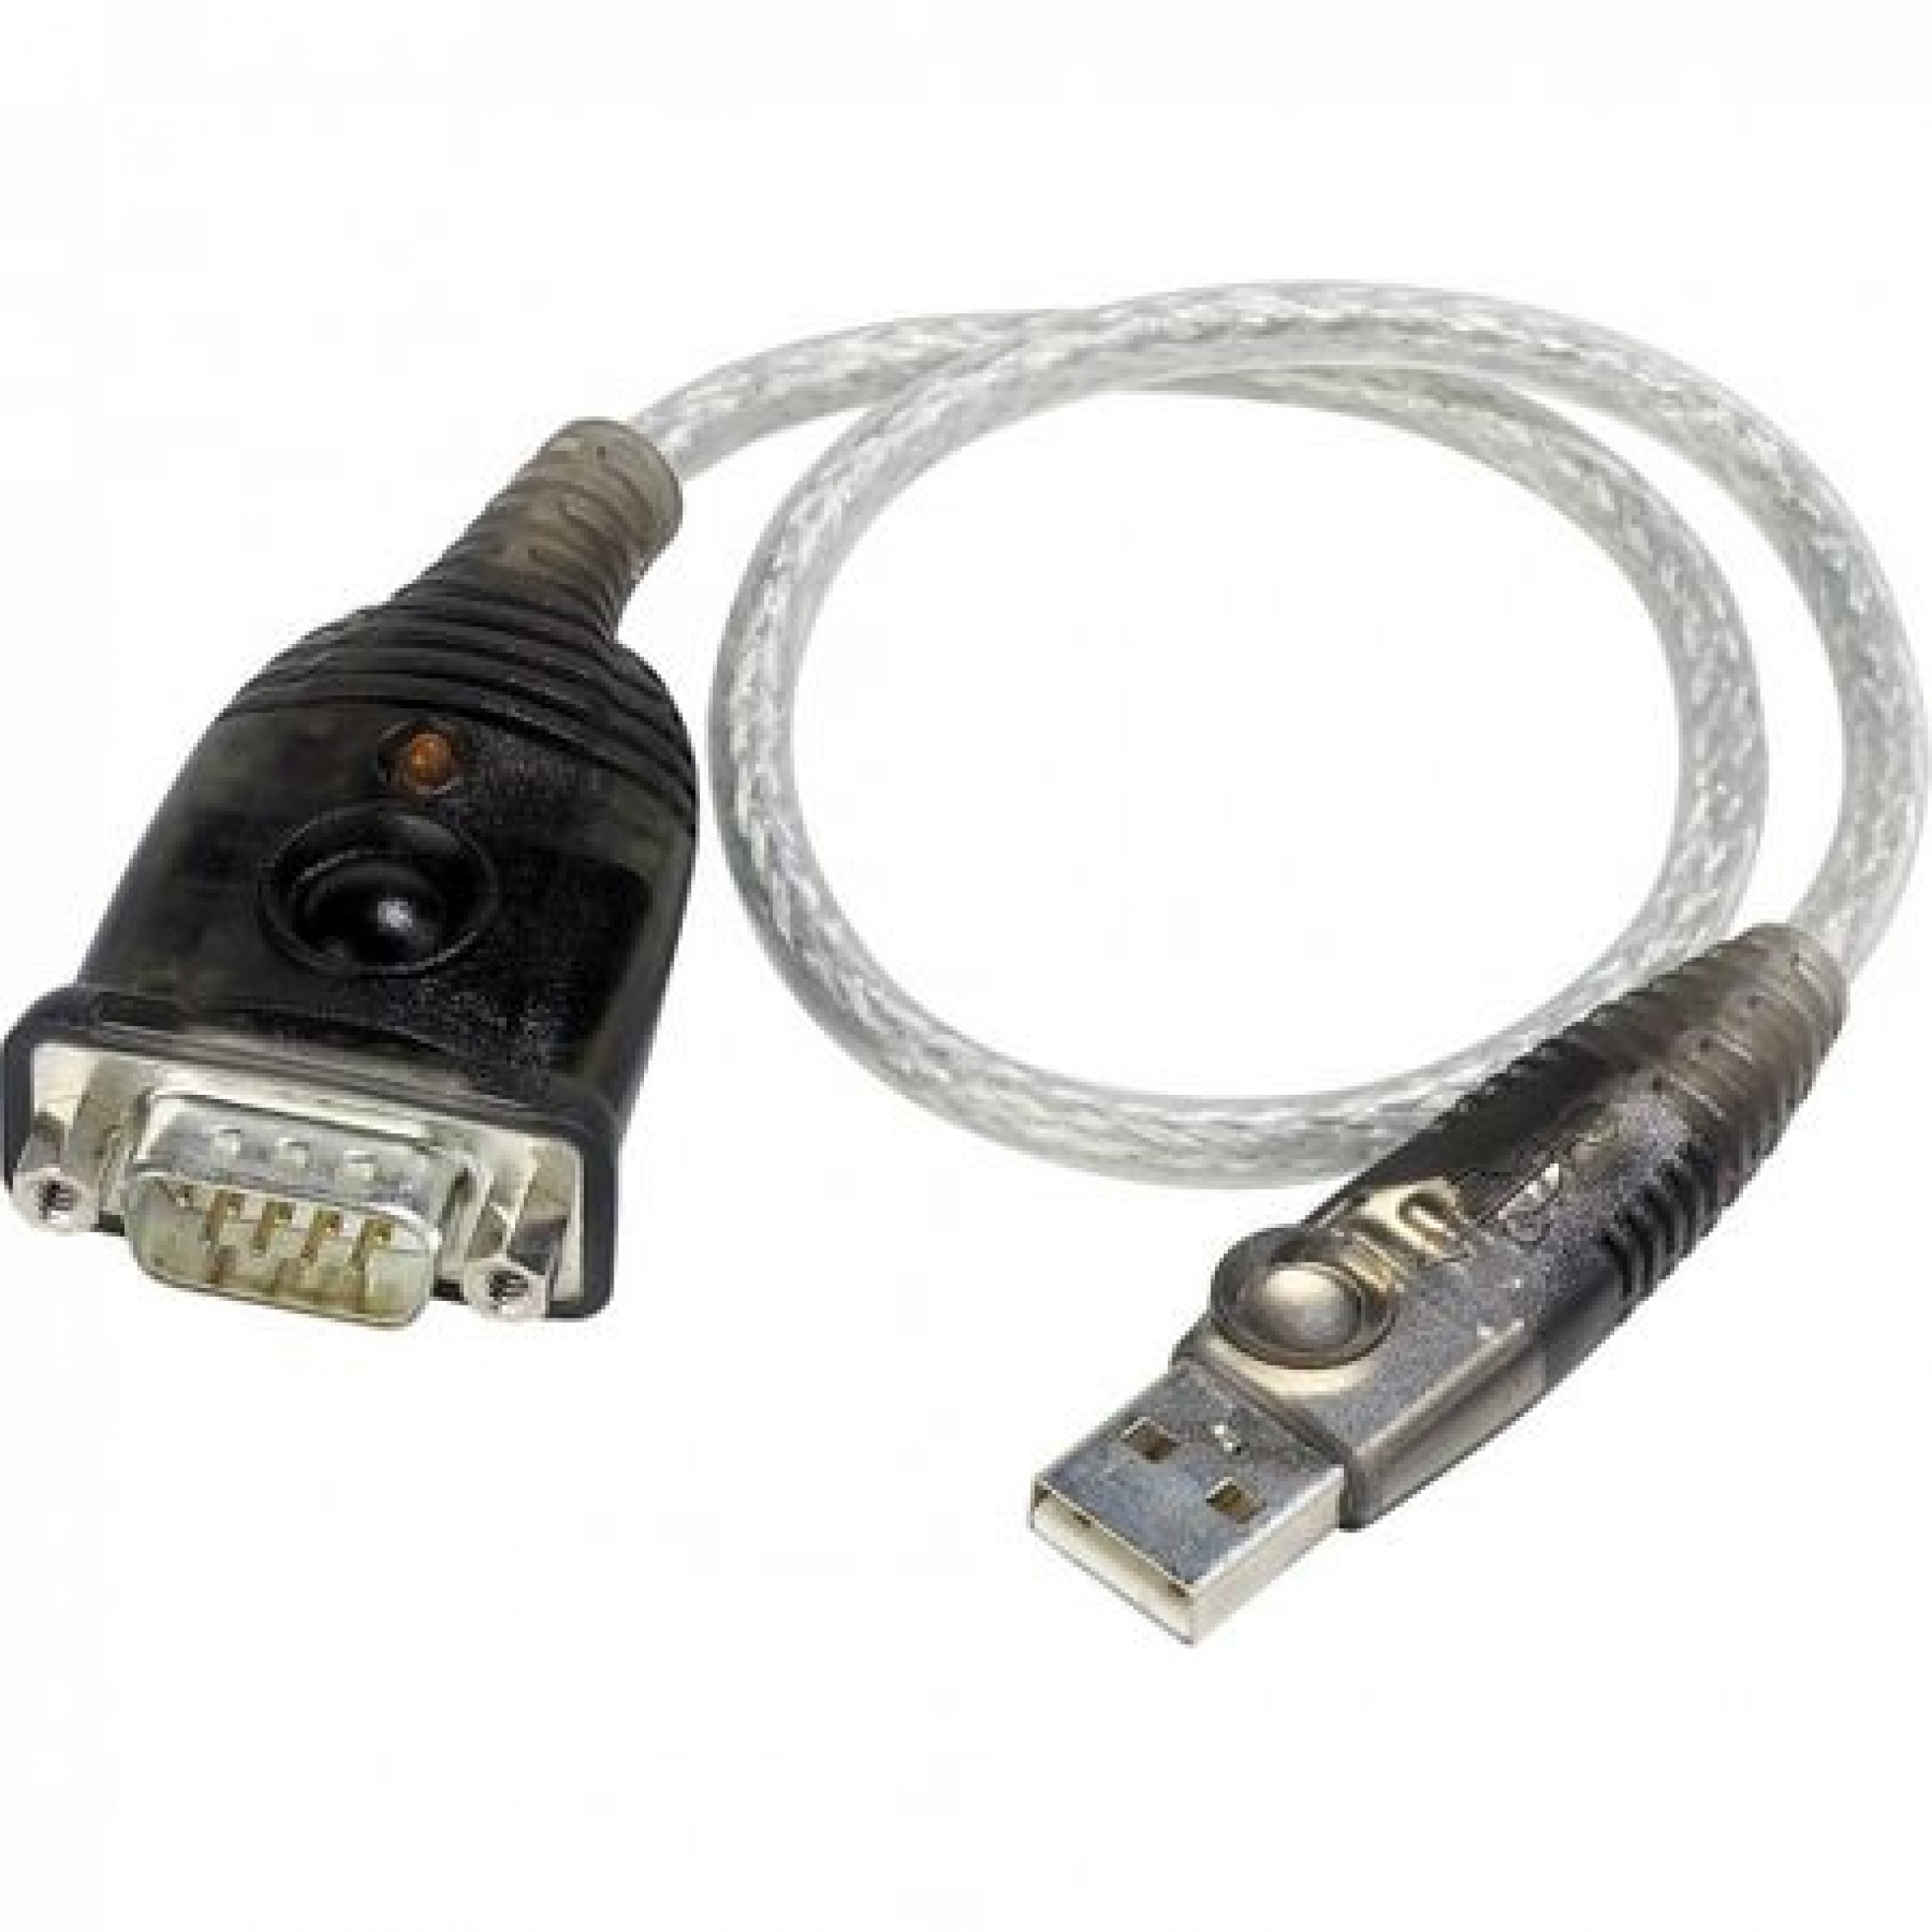 Splendor Look back Constraints Cablu USB la Serial RS232 0.3m, ATEN UC-232A